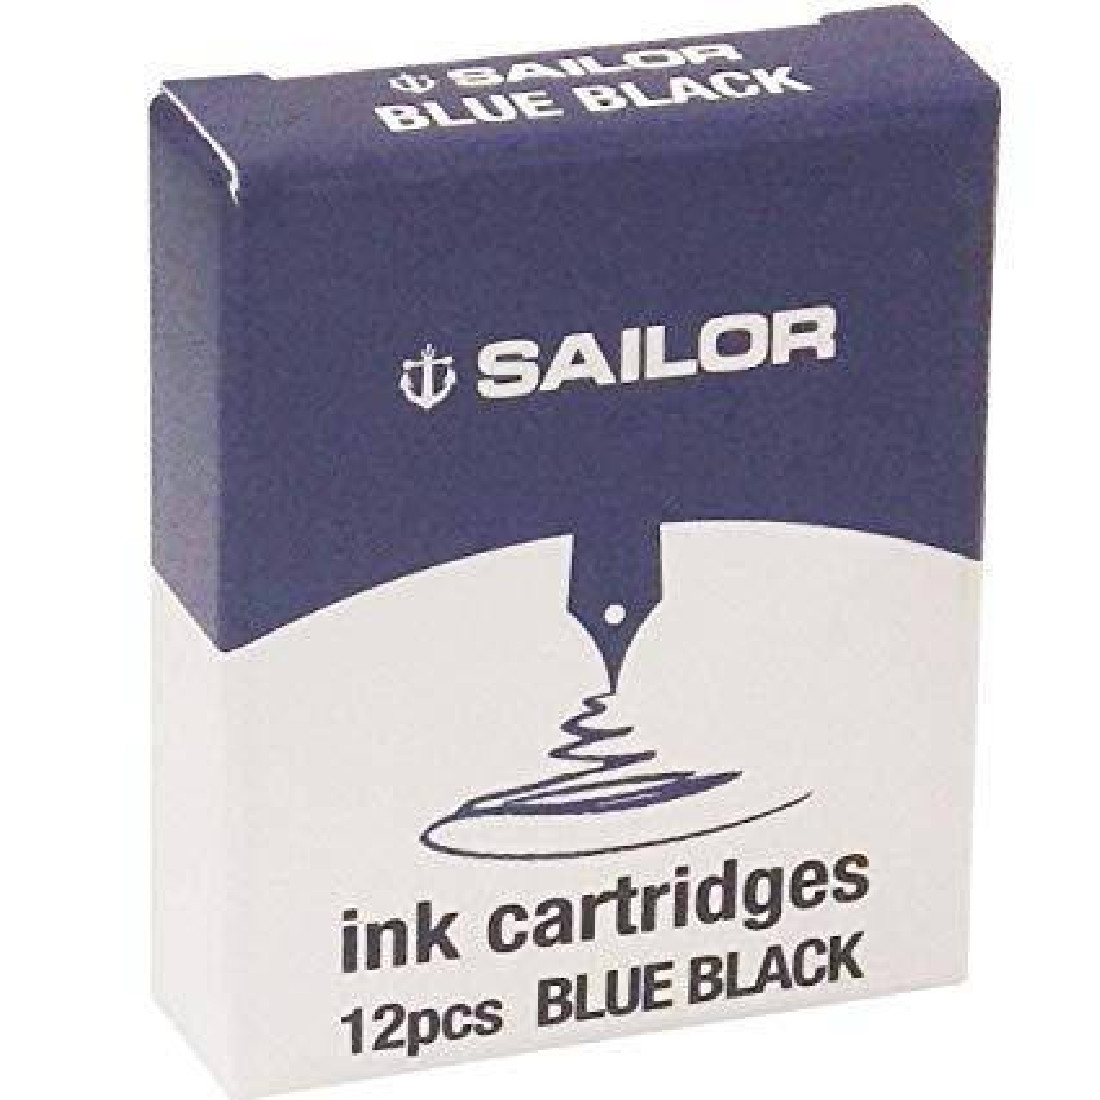 Sailor Gentle Ink cartridges blue black 12pcs